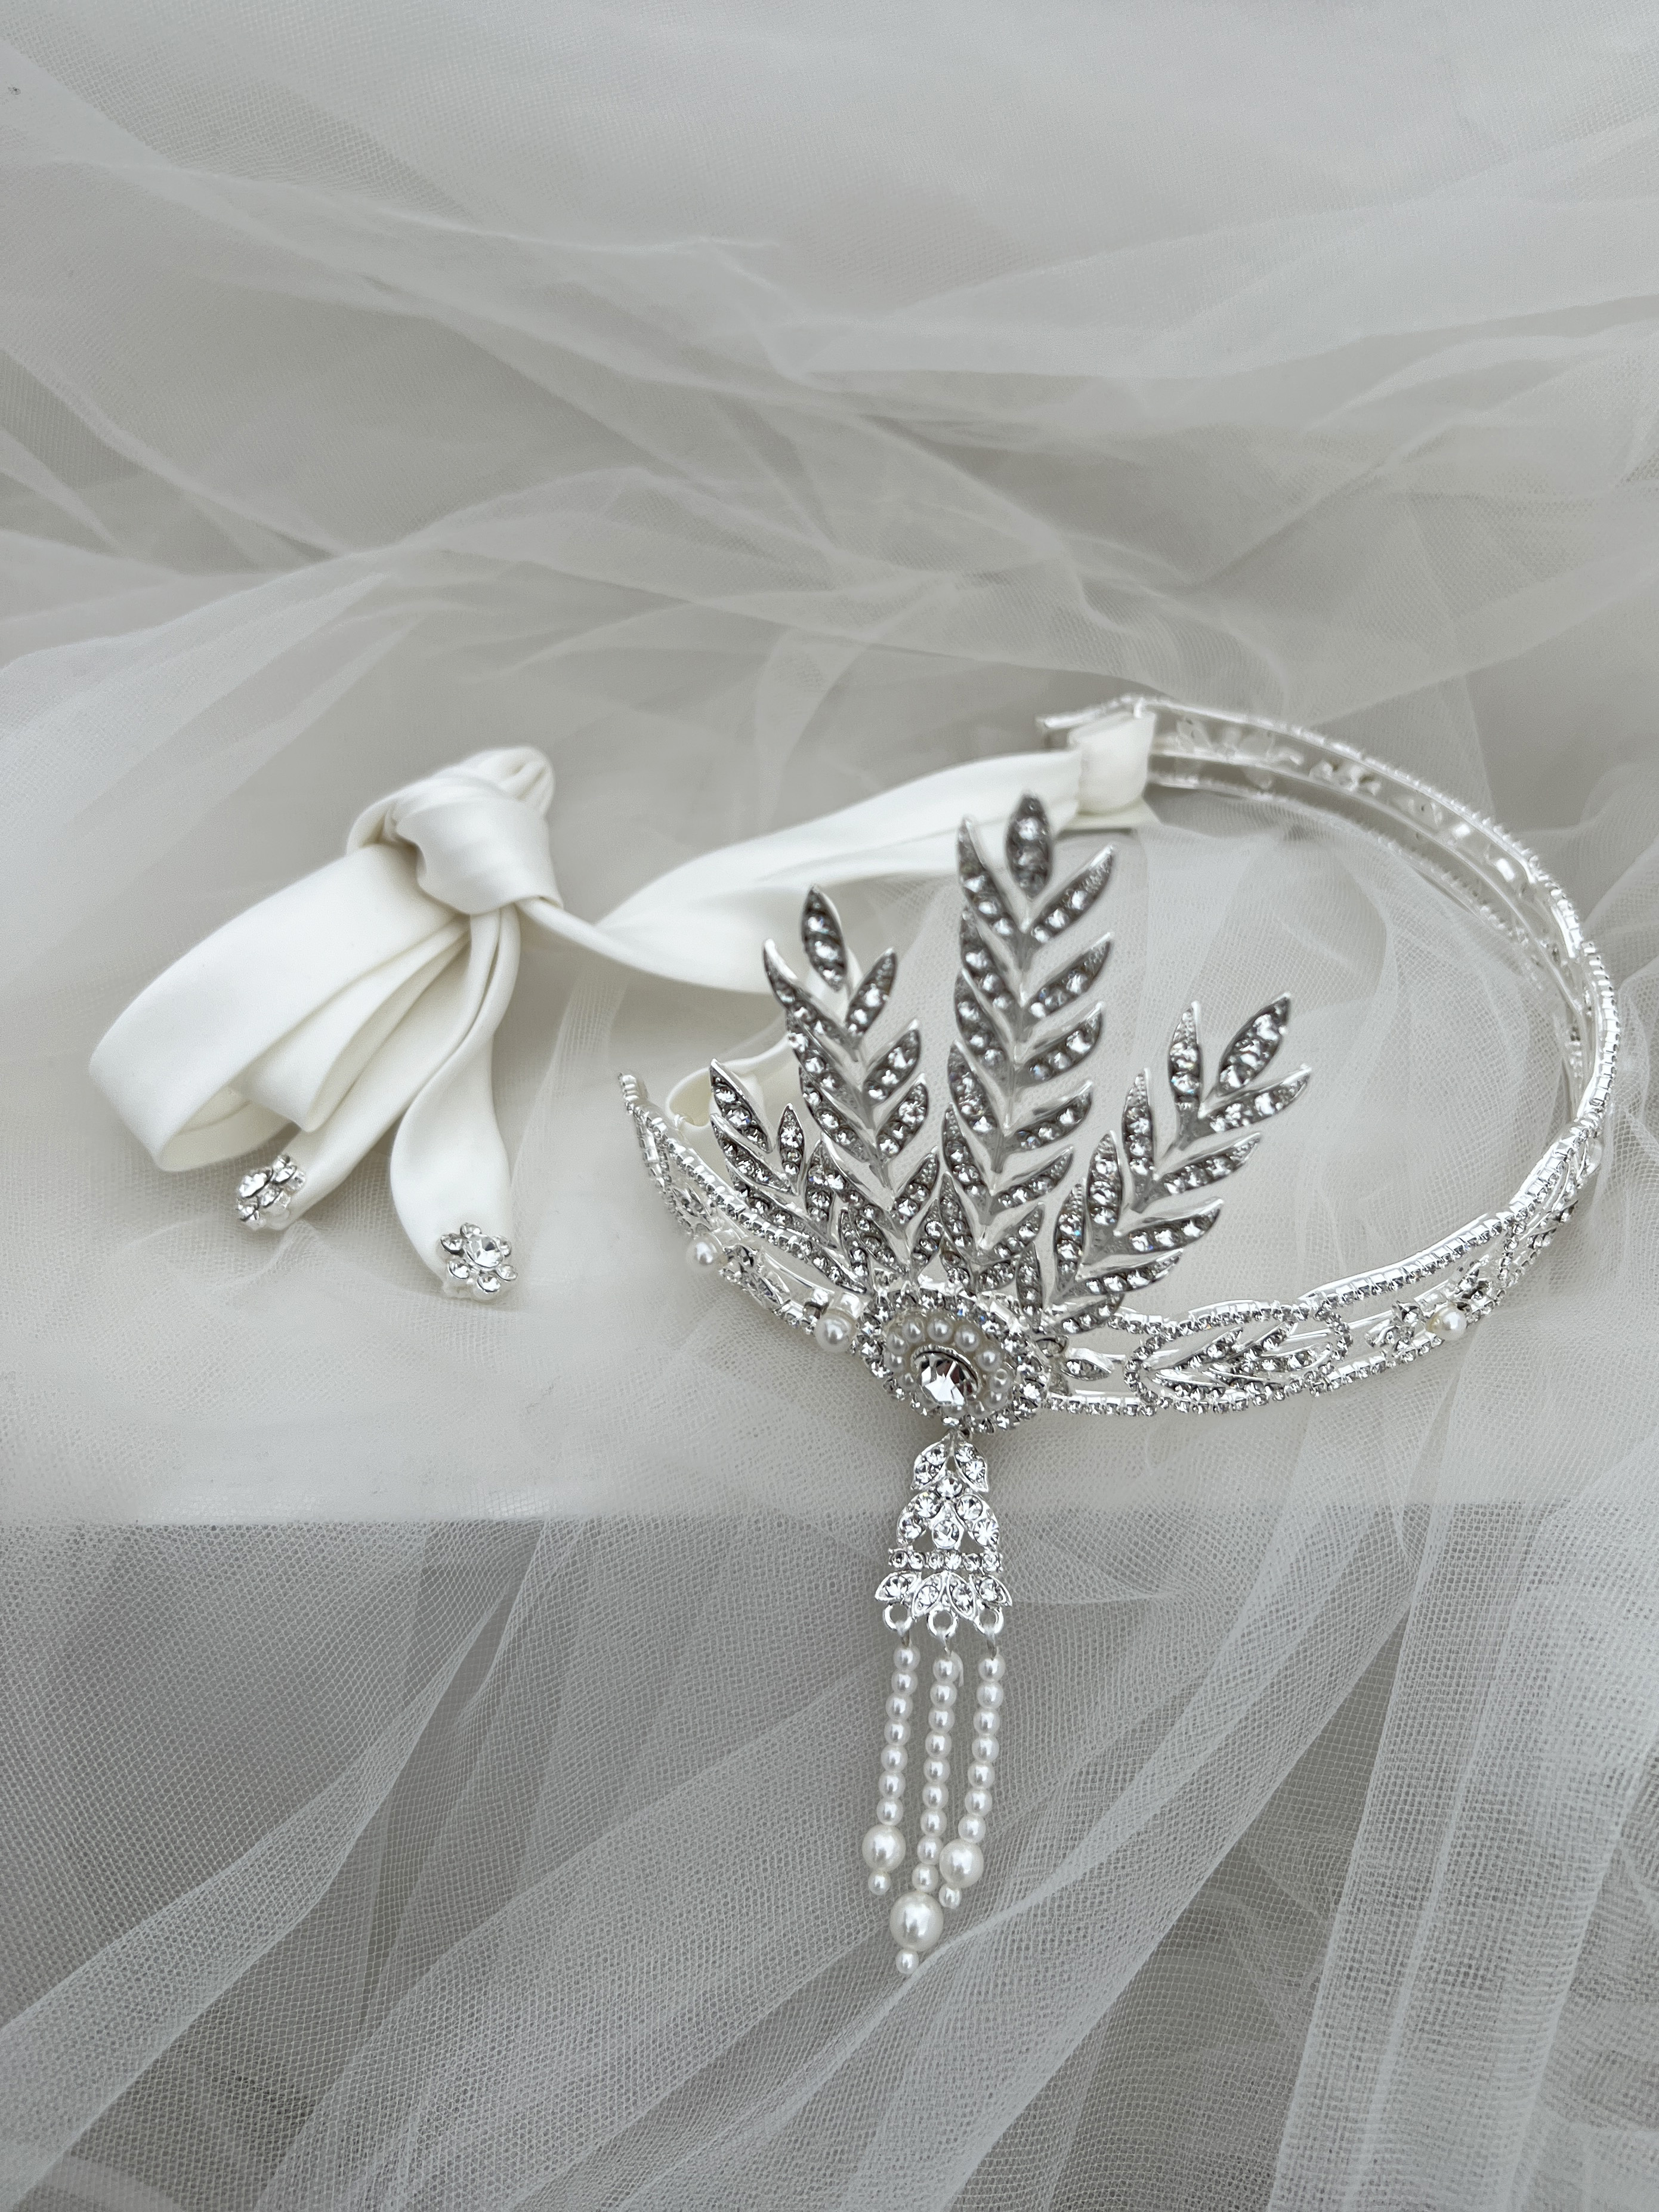 Bridal headband with satin ribbon tie